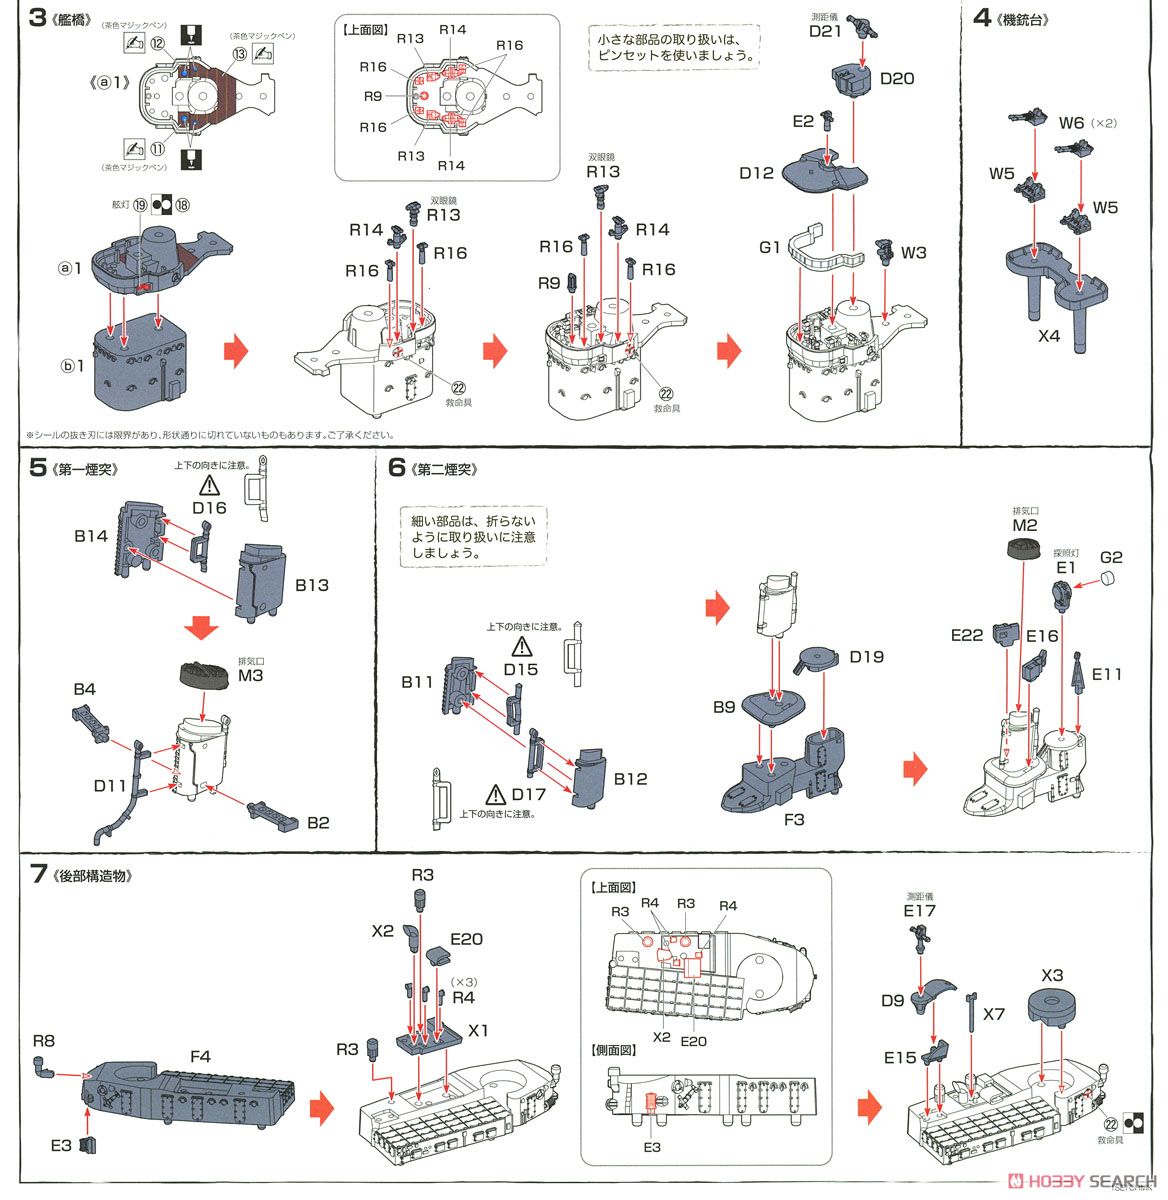 日本海軍陽炎型駆逐艦 陽炎 (プラモデル) 設計図2